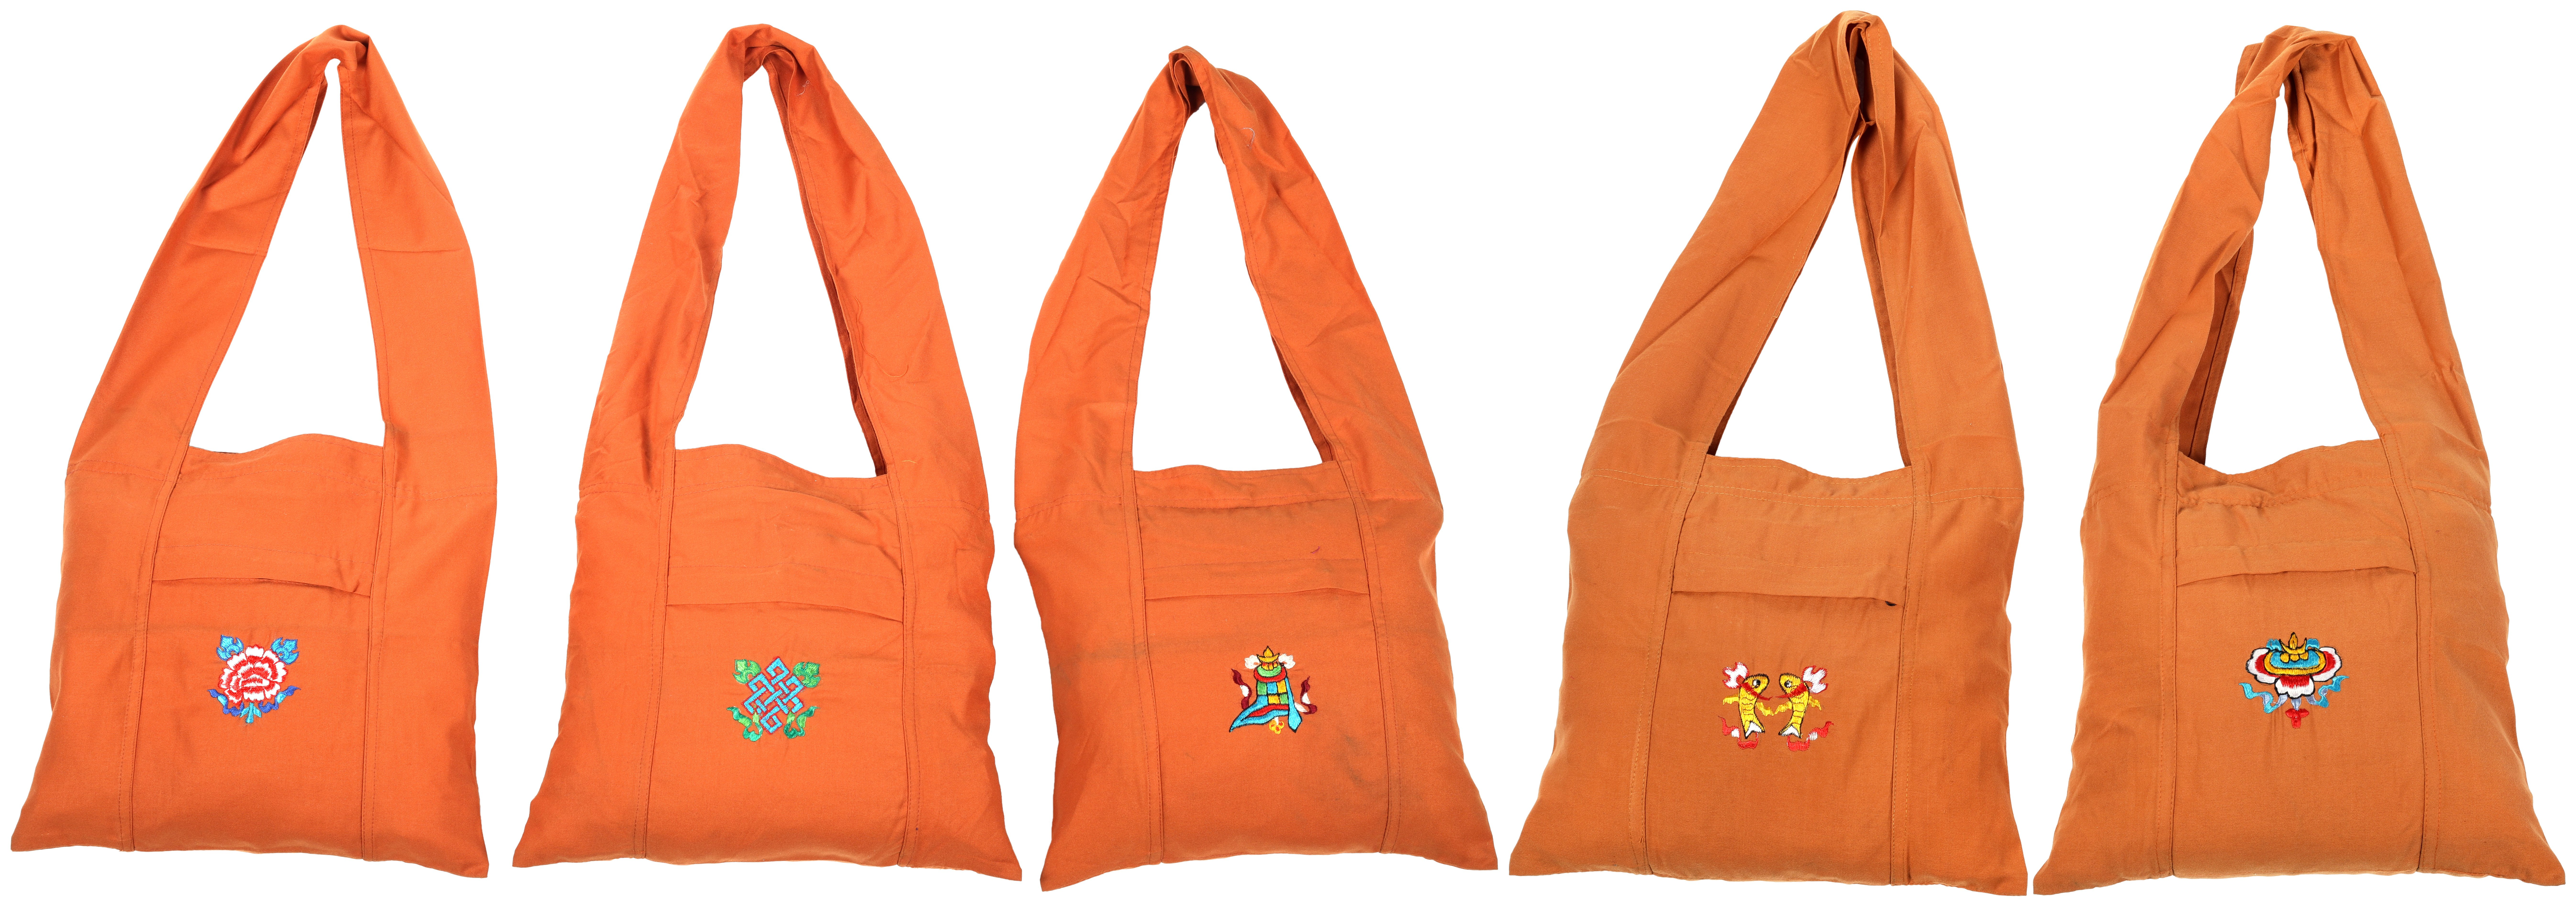 Jhola Bag | Bags, Bucket bag, Fashion